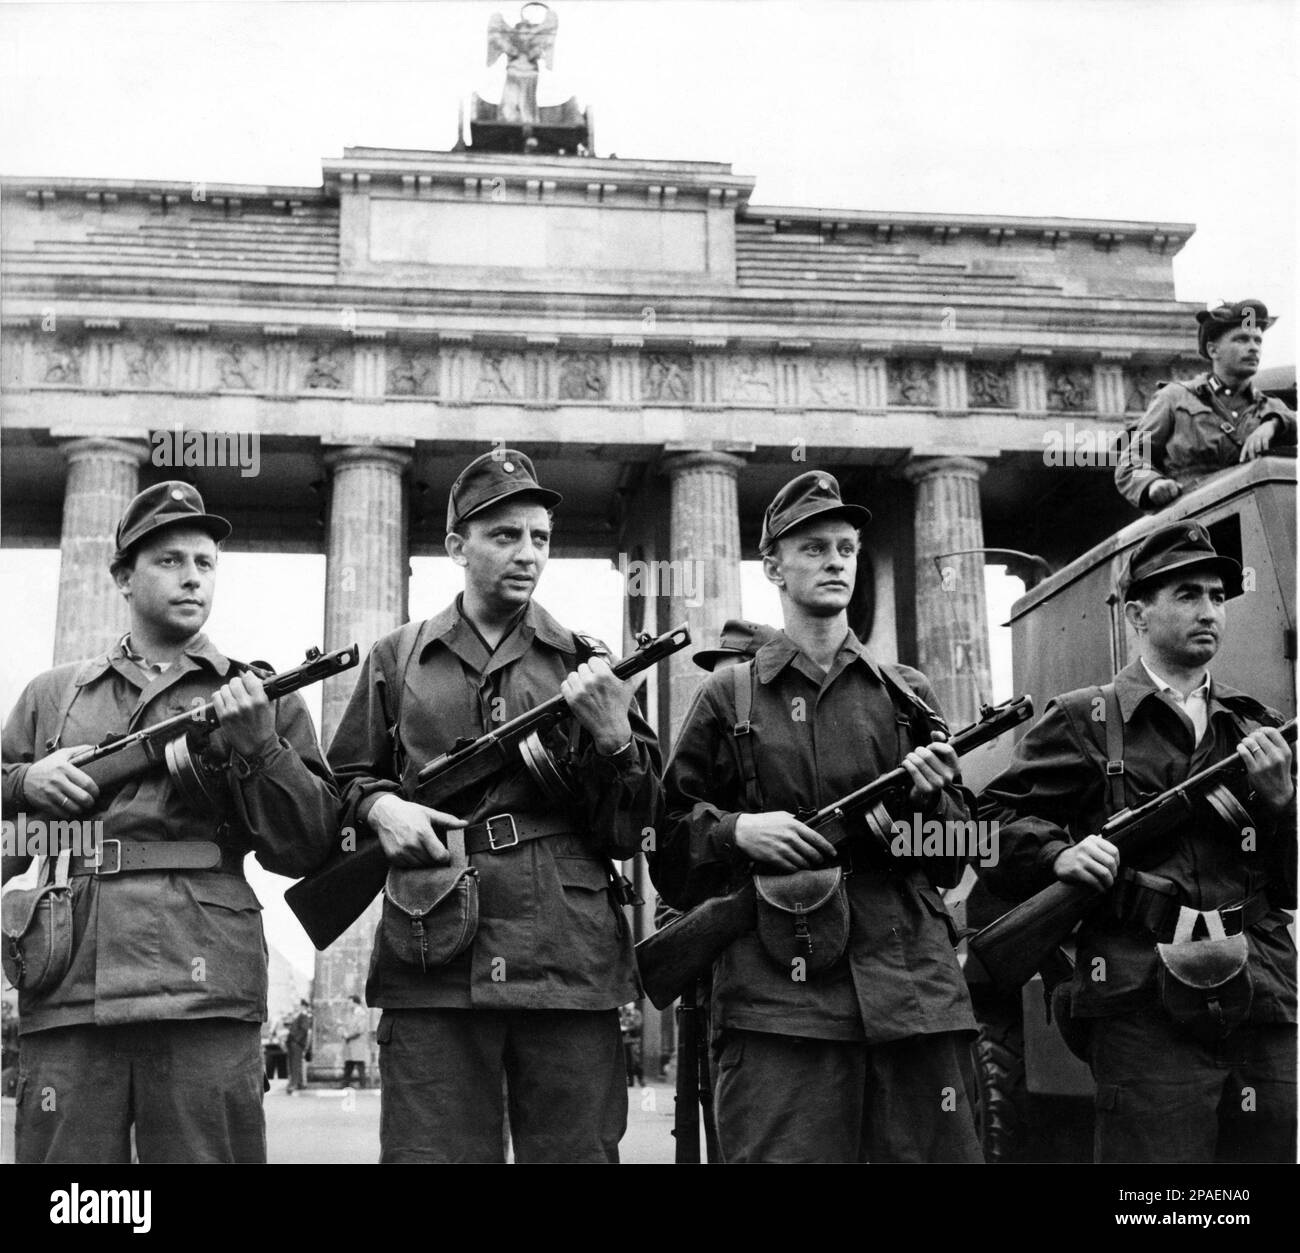 1961 , BERLINO , GERMANIA : le forze armate della REPUBBLICA DEMOCRATICA TEDESCA sono in guardia per il mantenimento della pace . Il governo infastidito il 13 agosto 1961 , i membri delle forze nazionali del popolo , le milizie e la polizia popolare sono in guardia ai confini della Berlino democratica . In questa foto le camerate delle milizie del popolo proteggono il confine della Berlino democratica di fronte al famoso monumento BERLINESE porta DI BRANDEBURGO - BERLINO - ITALIA - FOTO STORICHE - STORIA - GEOGRAFIA - GEOGRAFIA - archittura - ARCHITETTURA - PIAZZA - PORTA DI BRANDENBURGO - REPUB Foto Stock